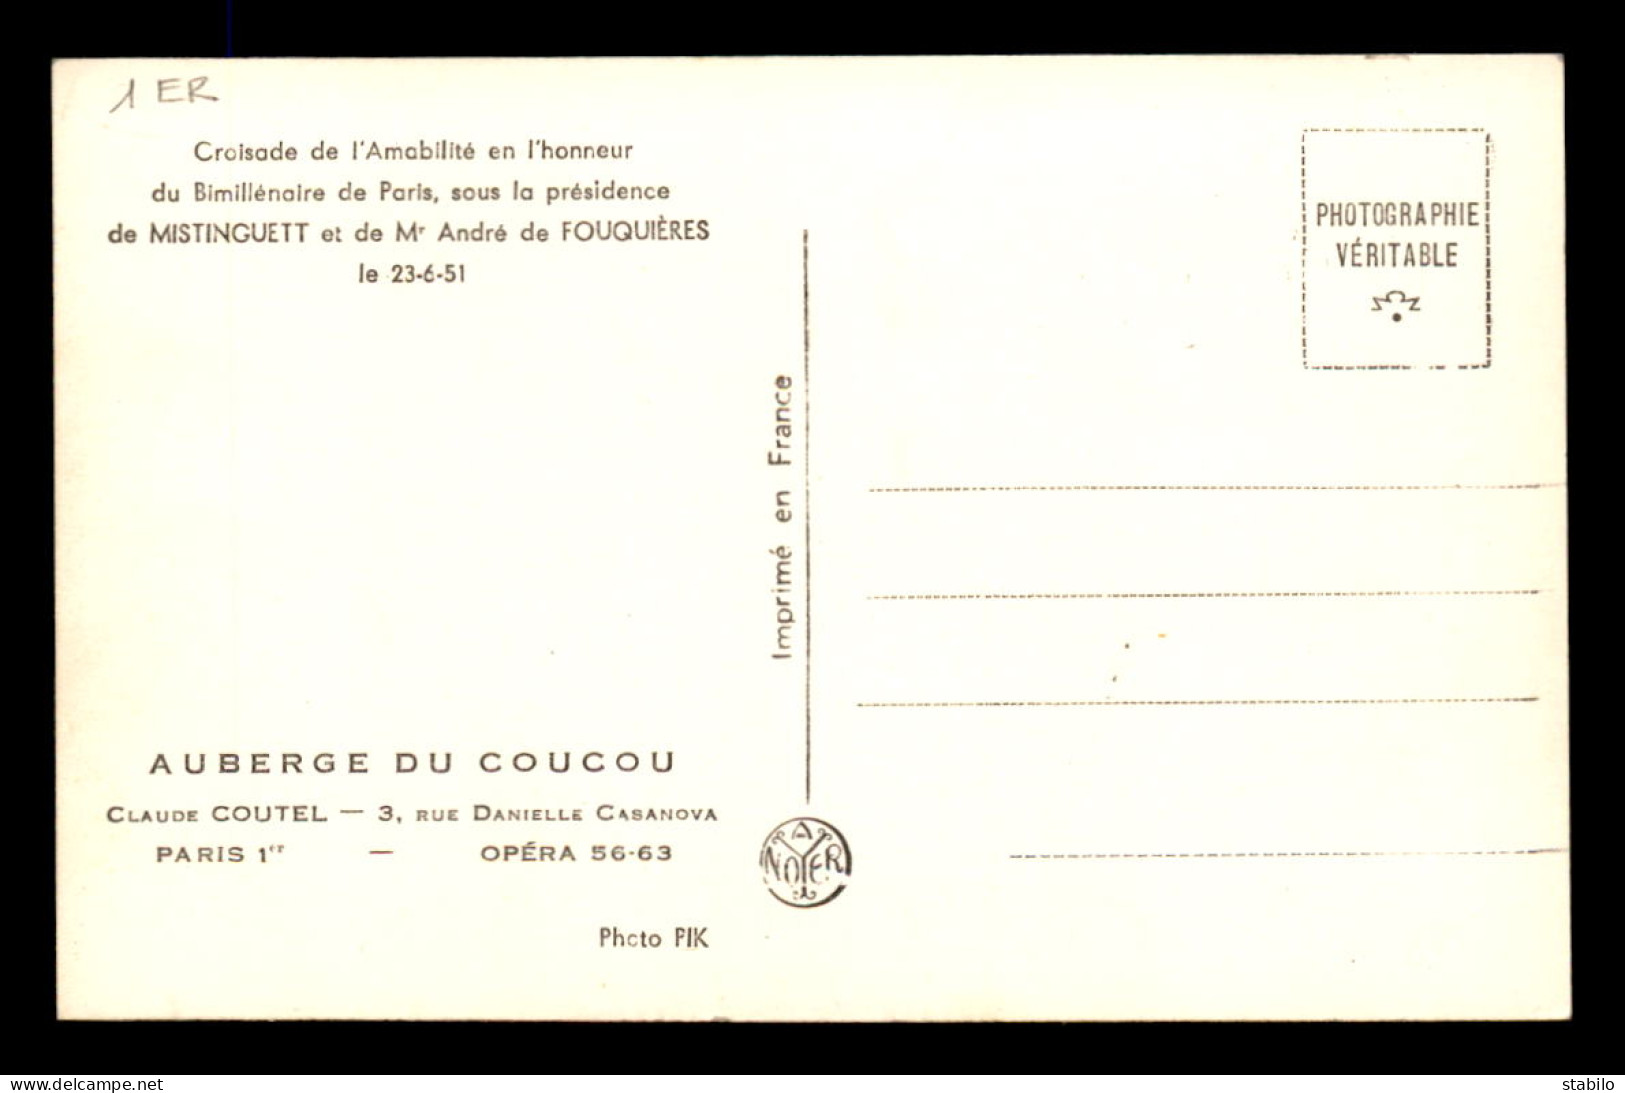 75 - PARIS 1ER - AUBERGE DU COUCOU, 3 RUE CASANOVA - CROISADE DE L'AMABILITE JUIN 1951 - MISTINGUETT ET A. DE FOUQUIERES - Paris (01)